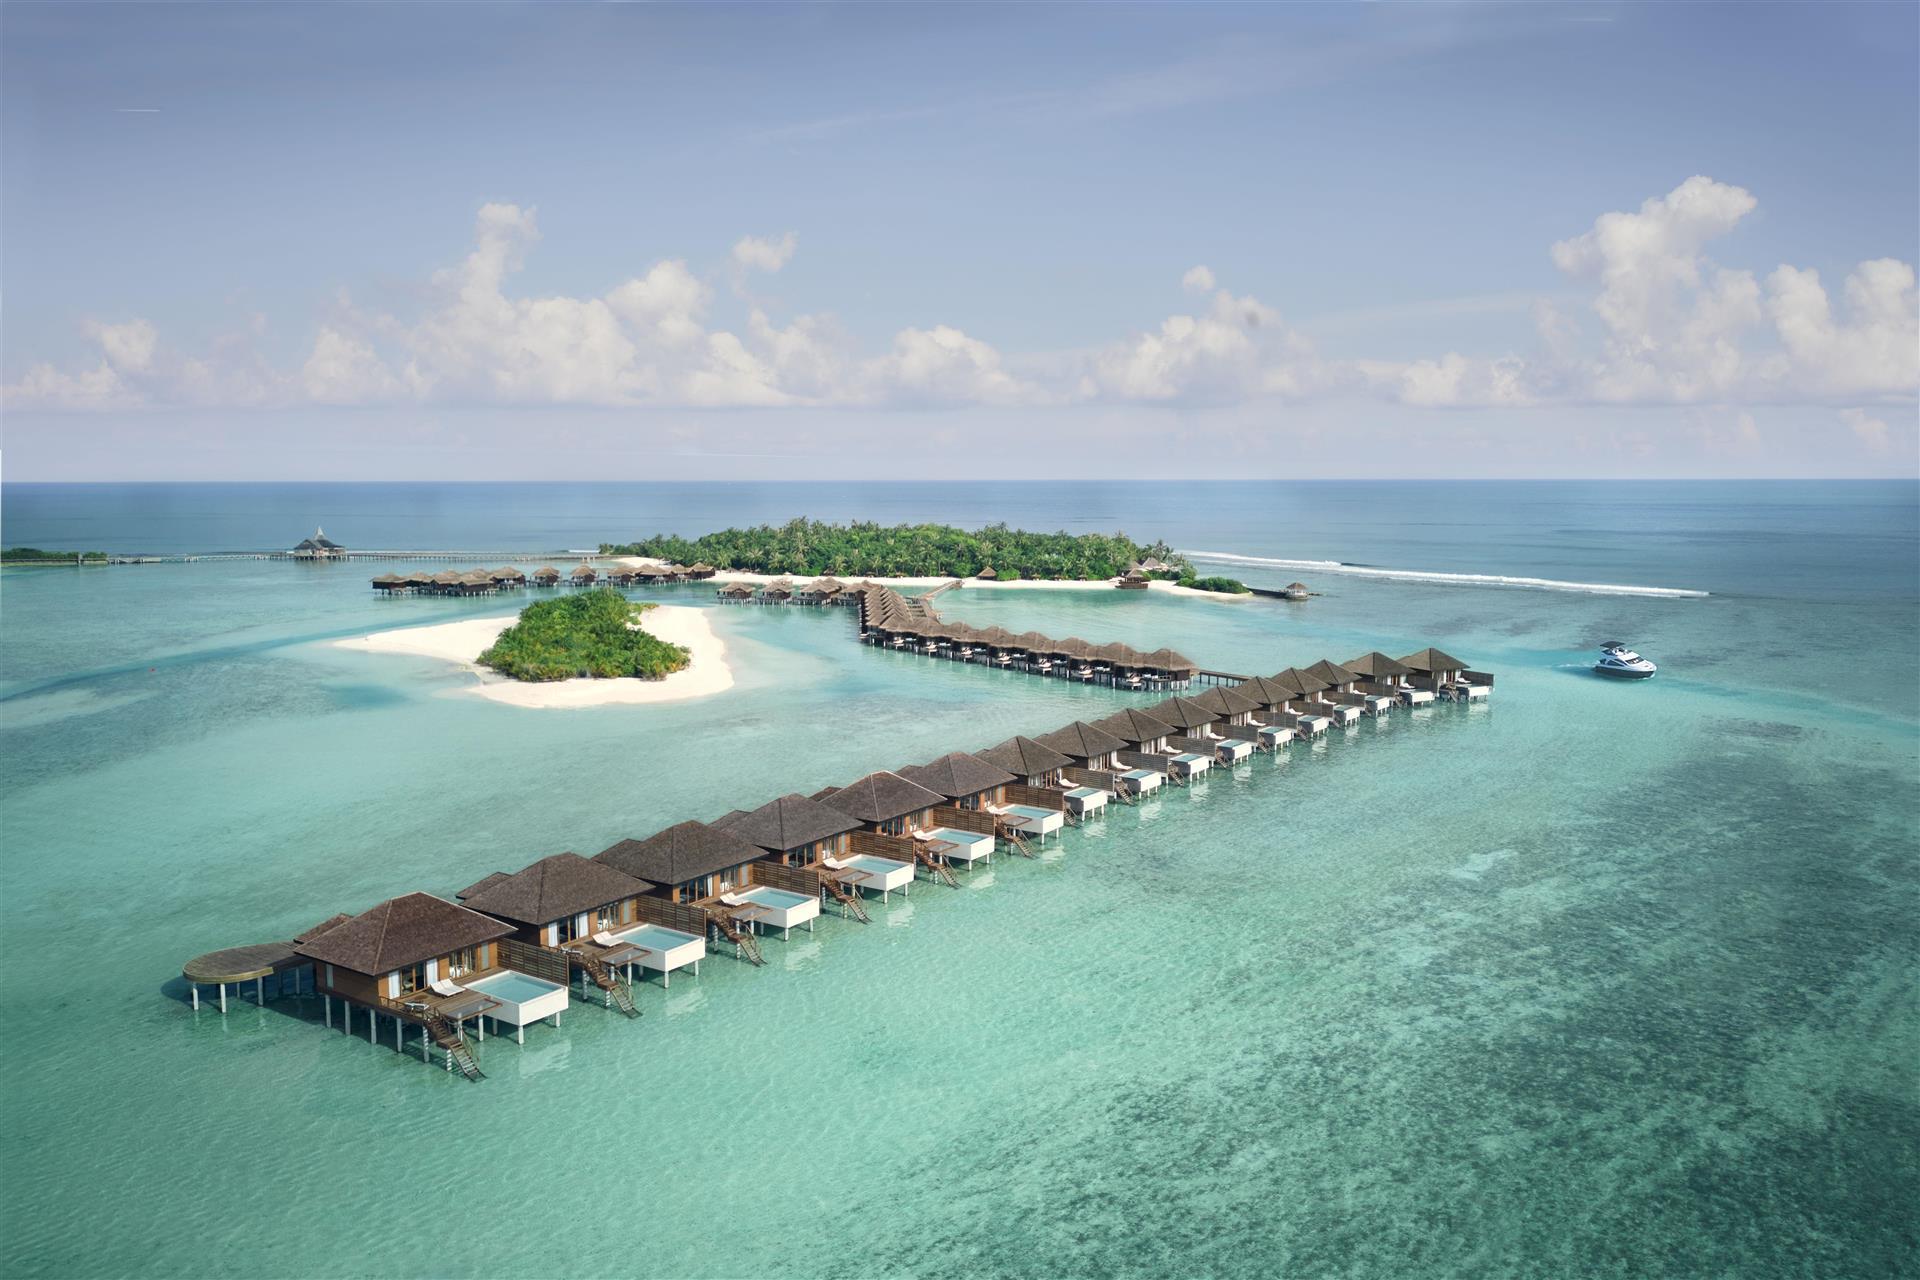 Anantara Veli Maldives Resort in Male, MV